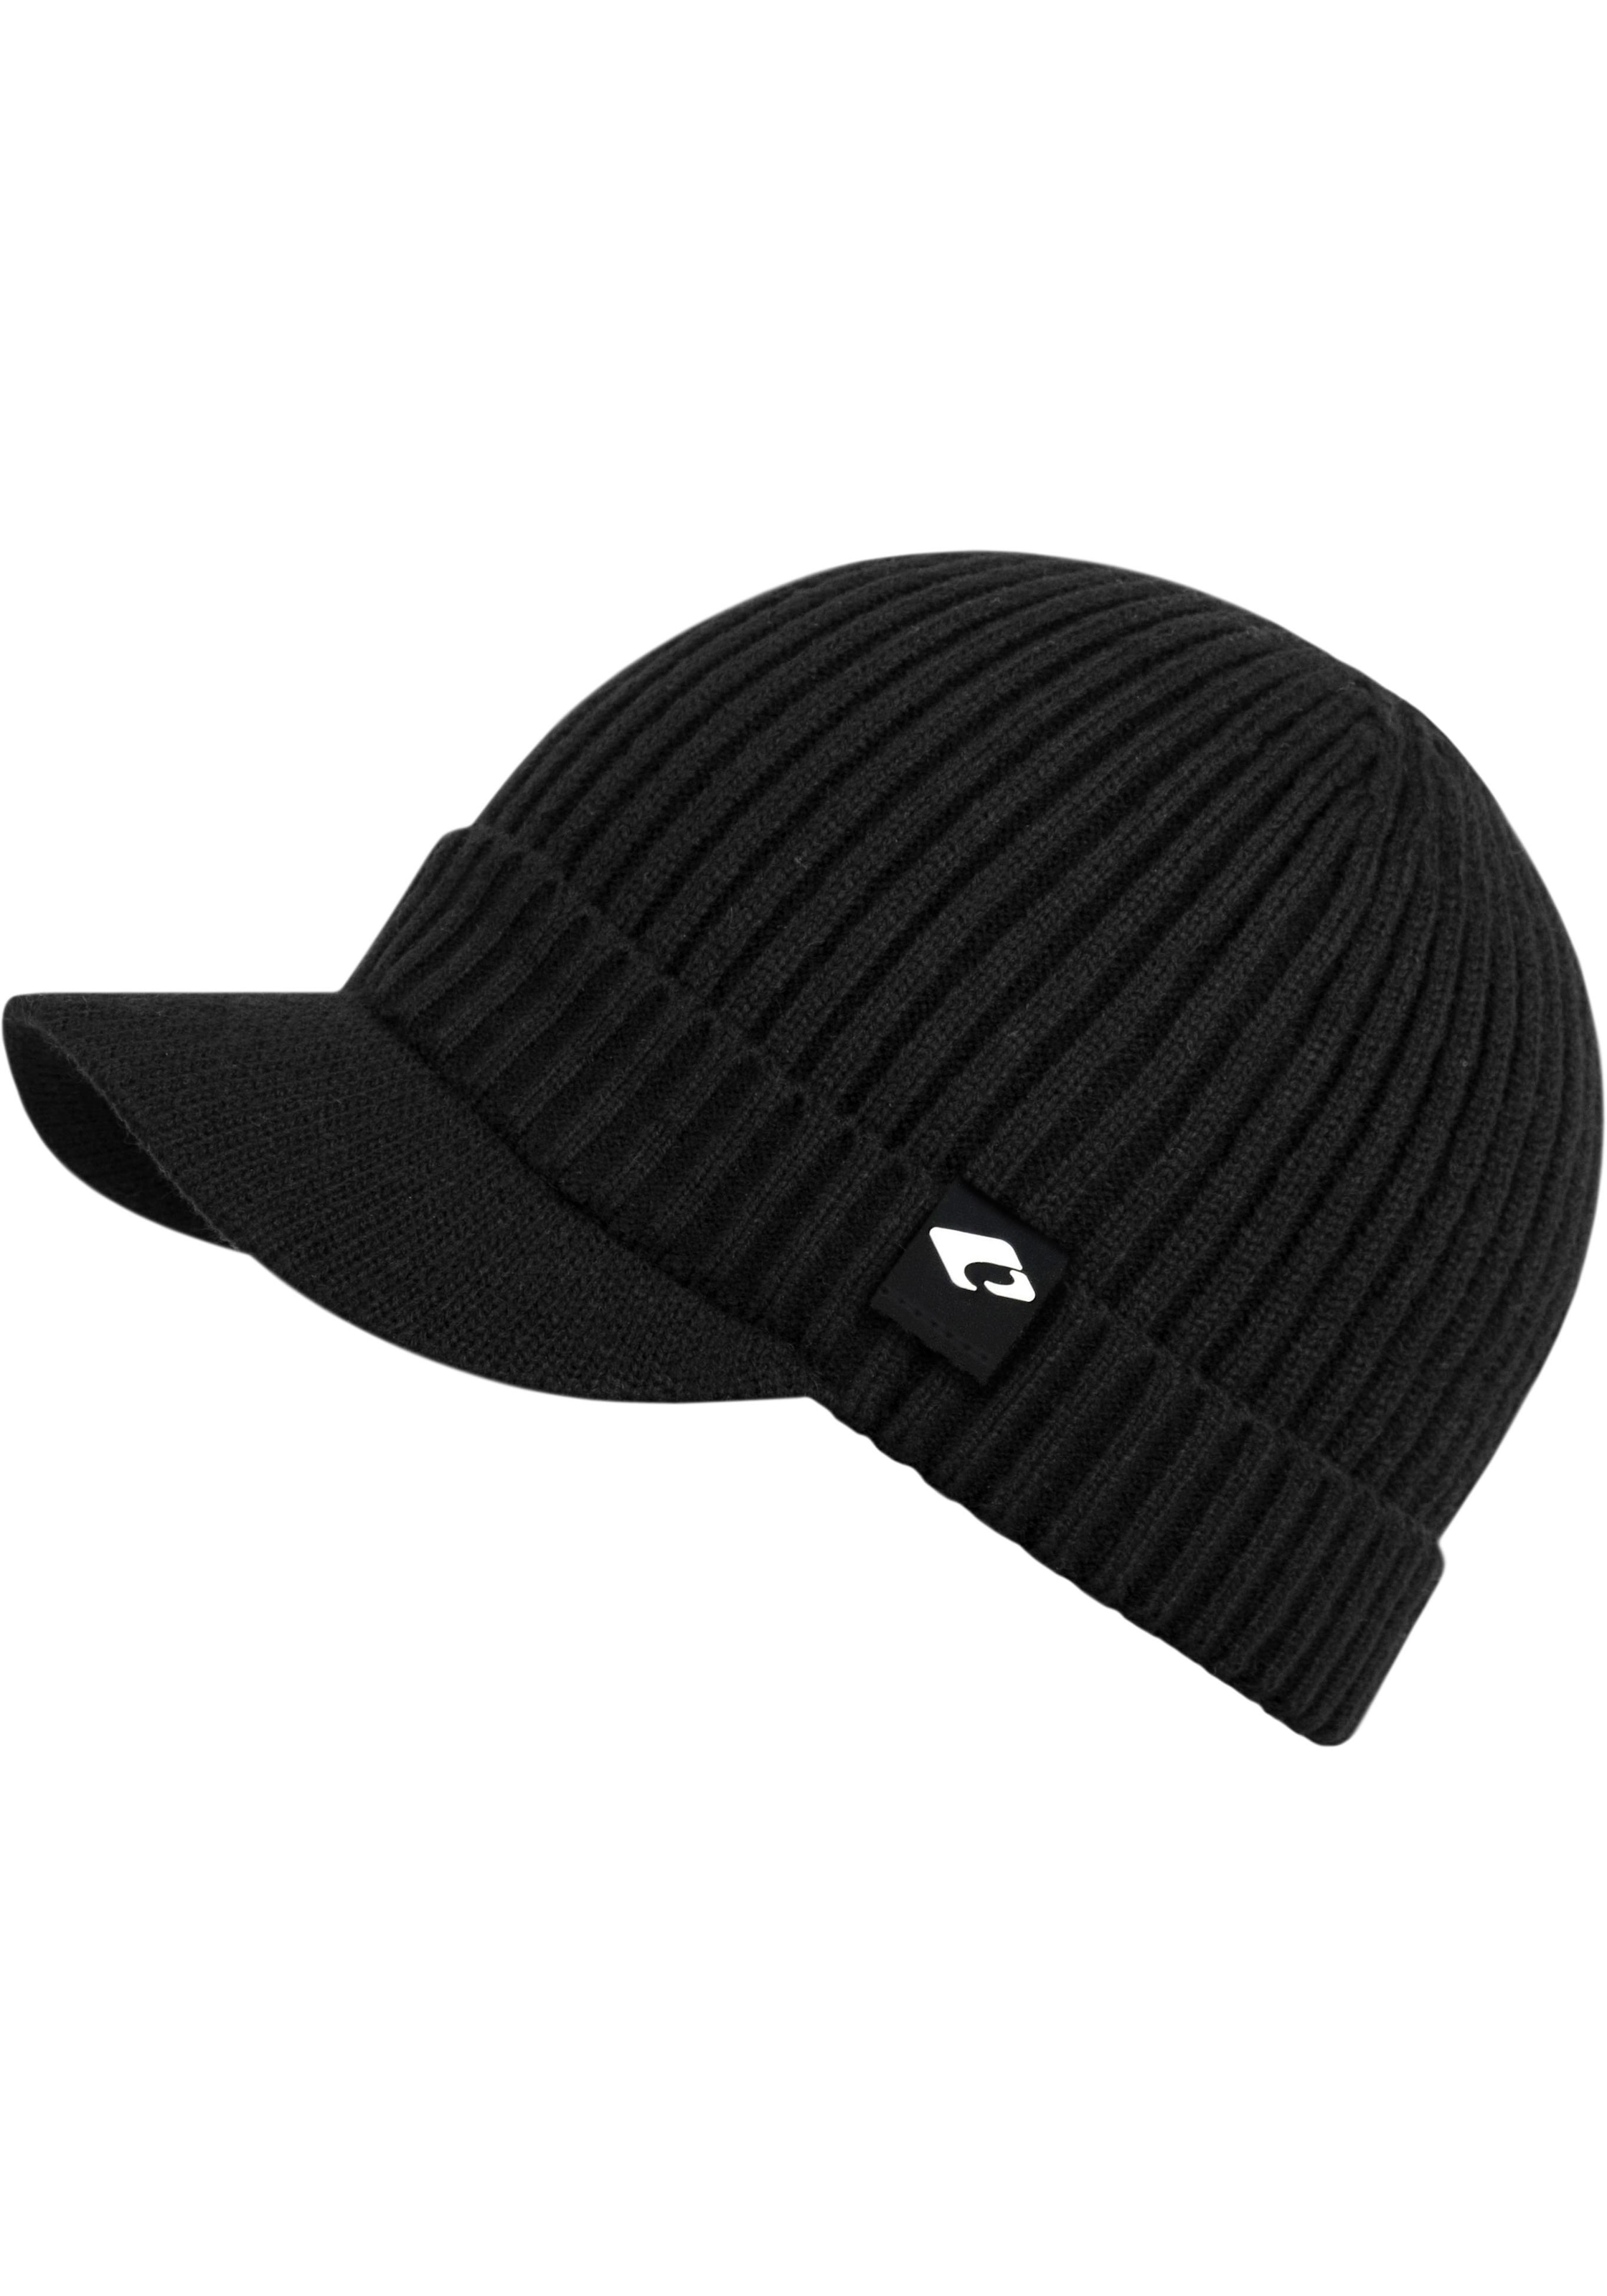 chillouts Strickmütze shoppen online Hat Hat«, »Benno bei OTTO Benno